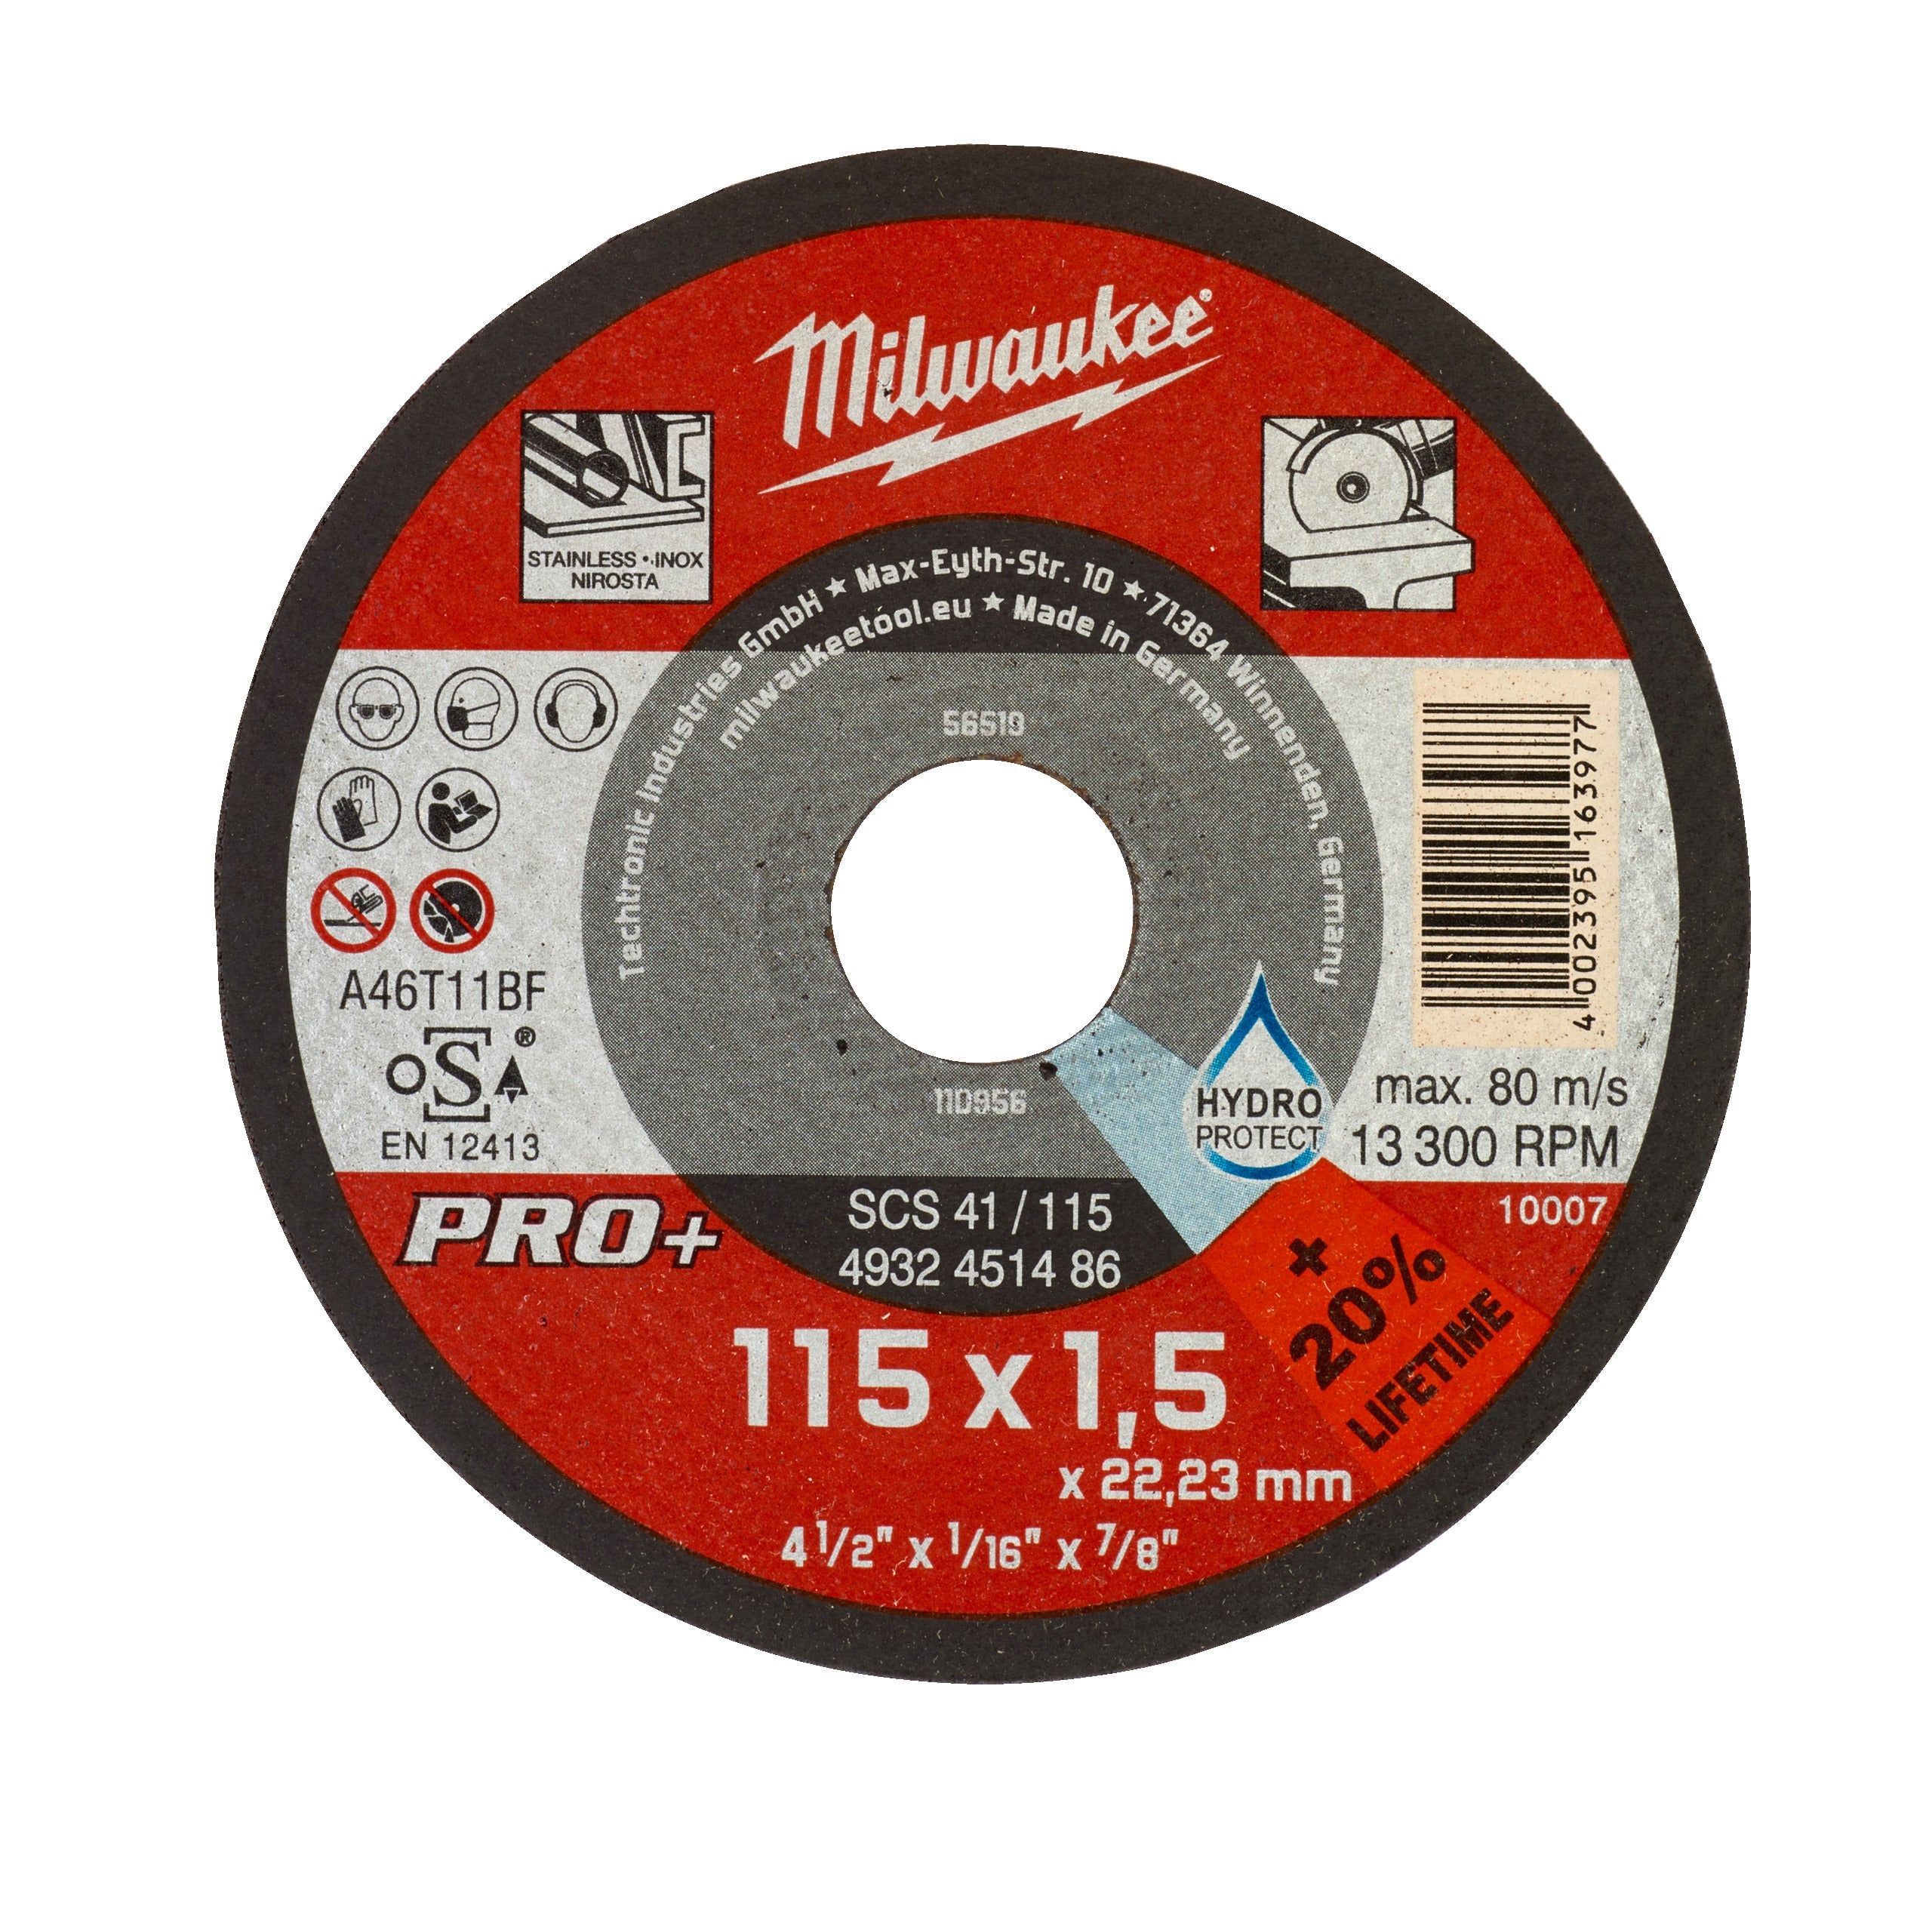 Disc PRO+ pentru debitare metal 115X1,5 PRO+ Milwaukee cod 4932451486